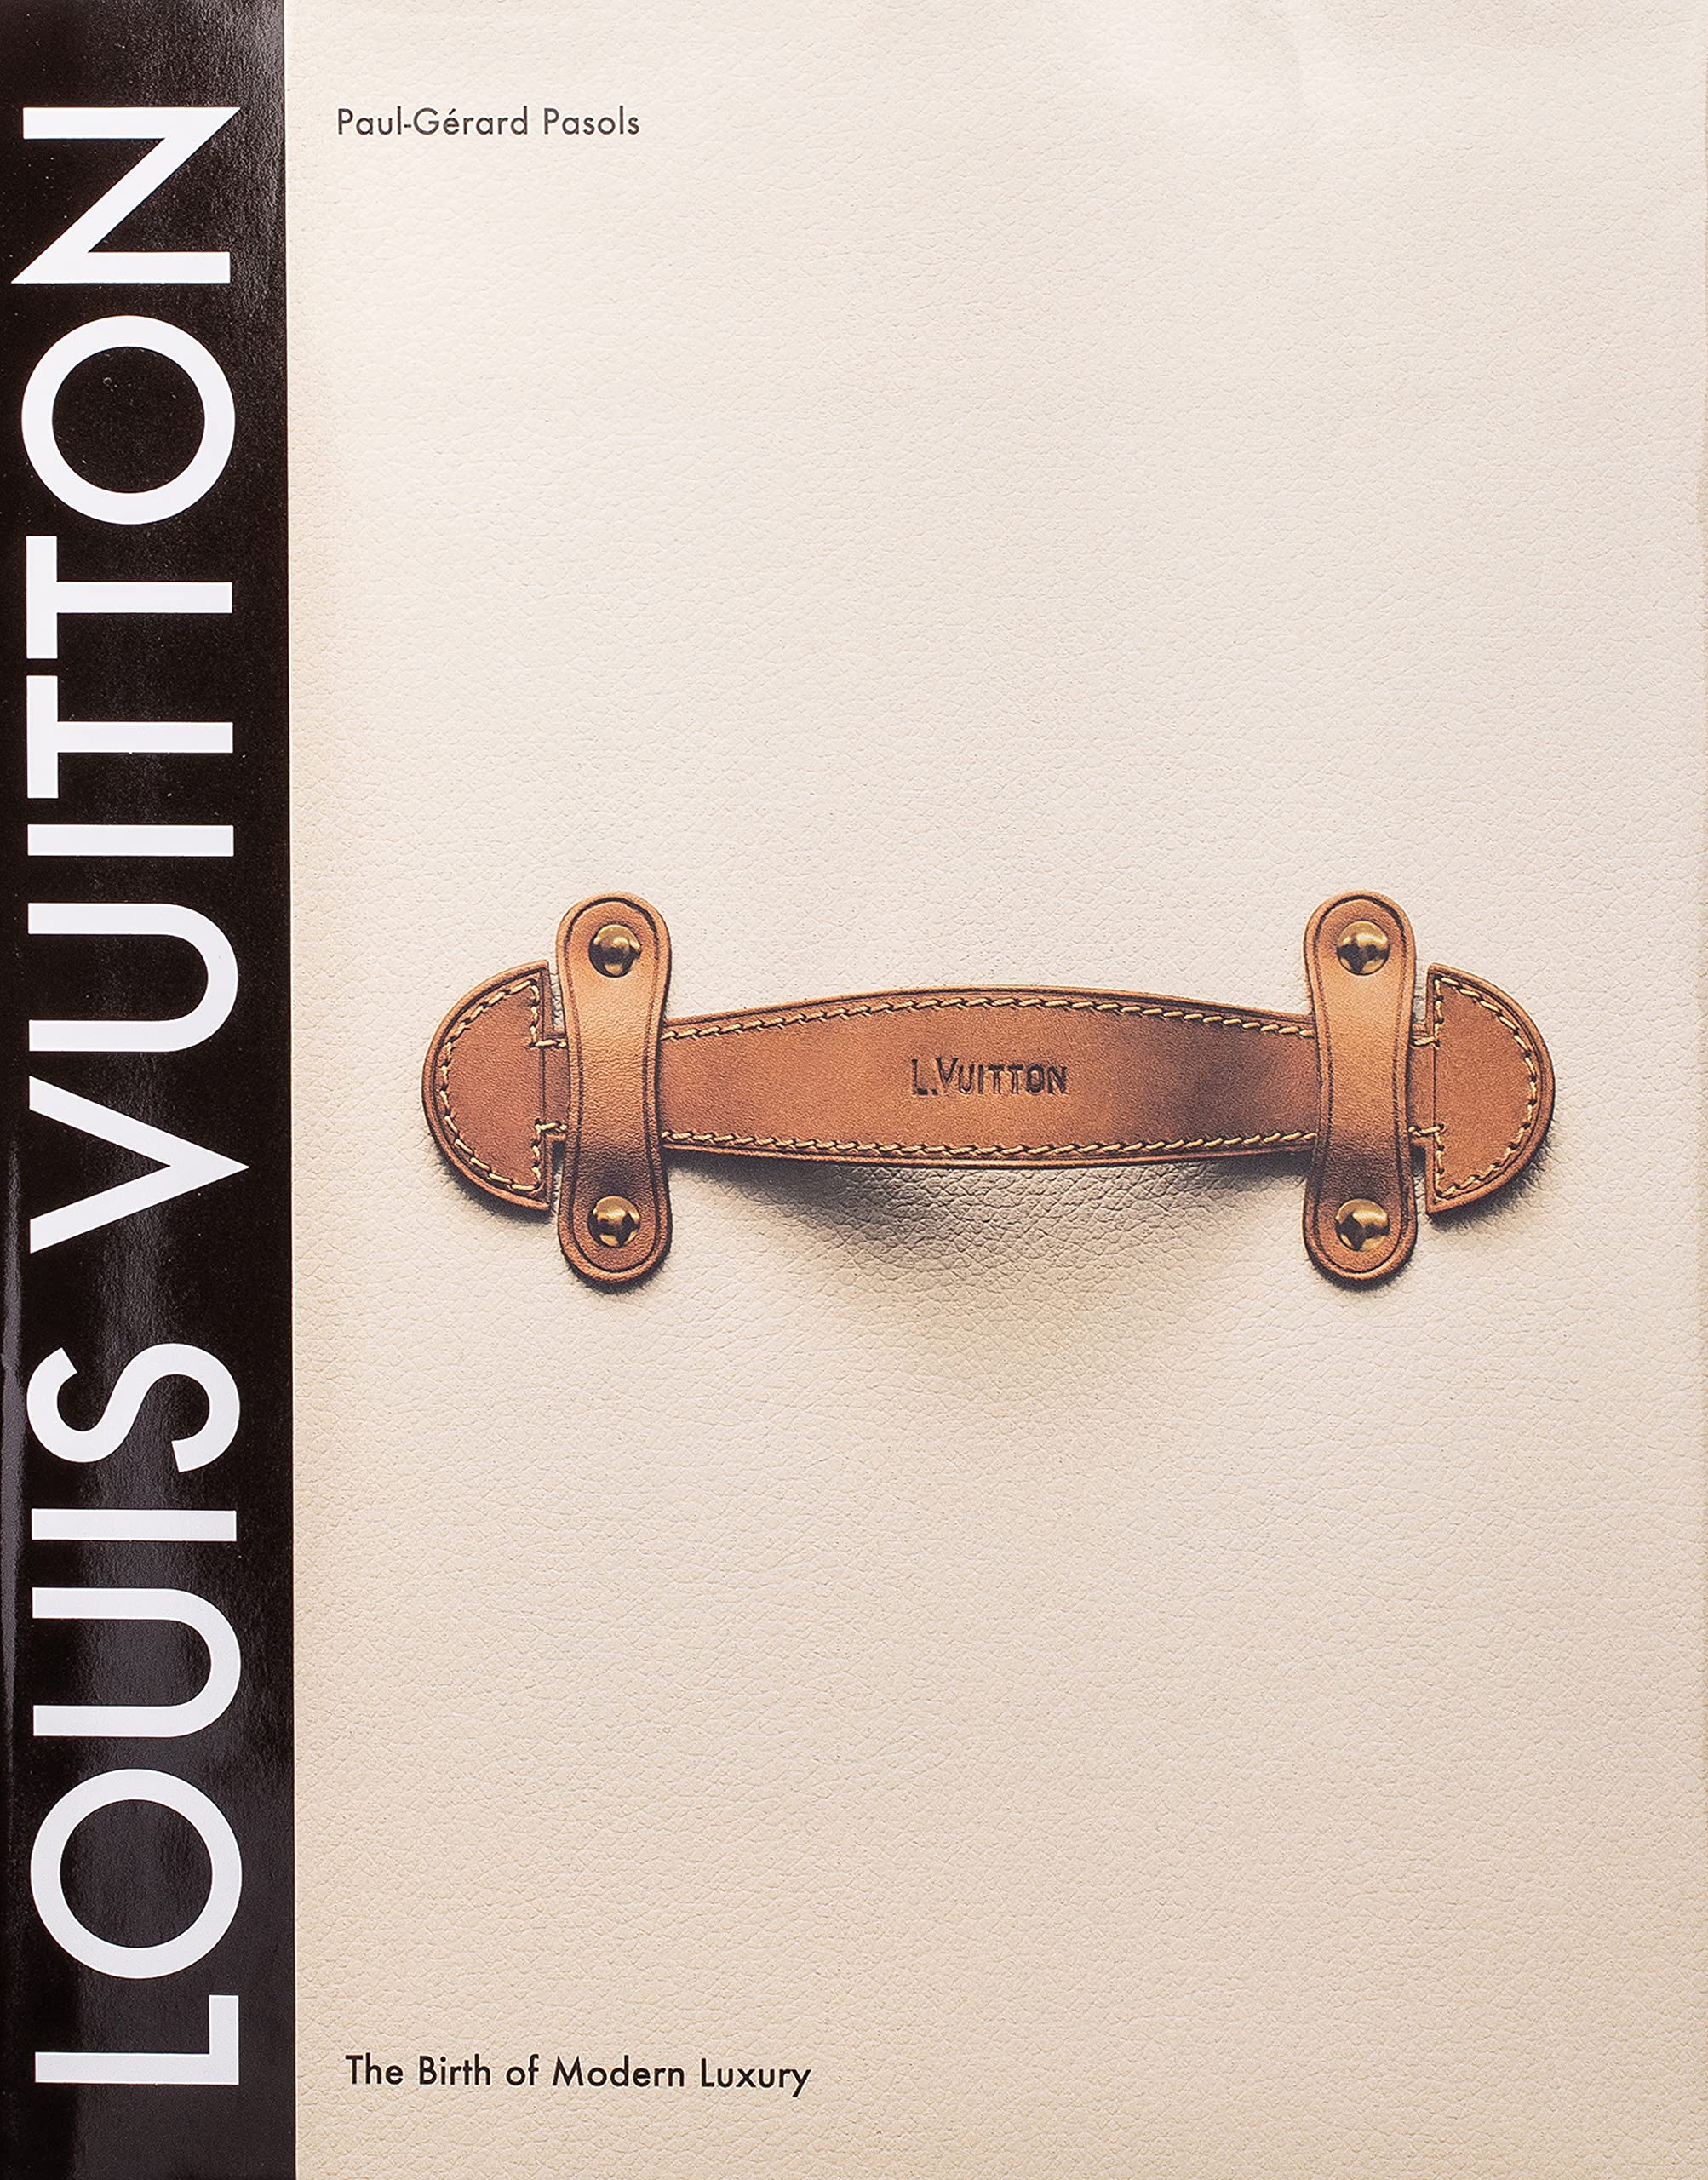 Louis Vuitton Table Book